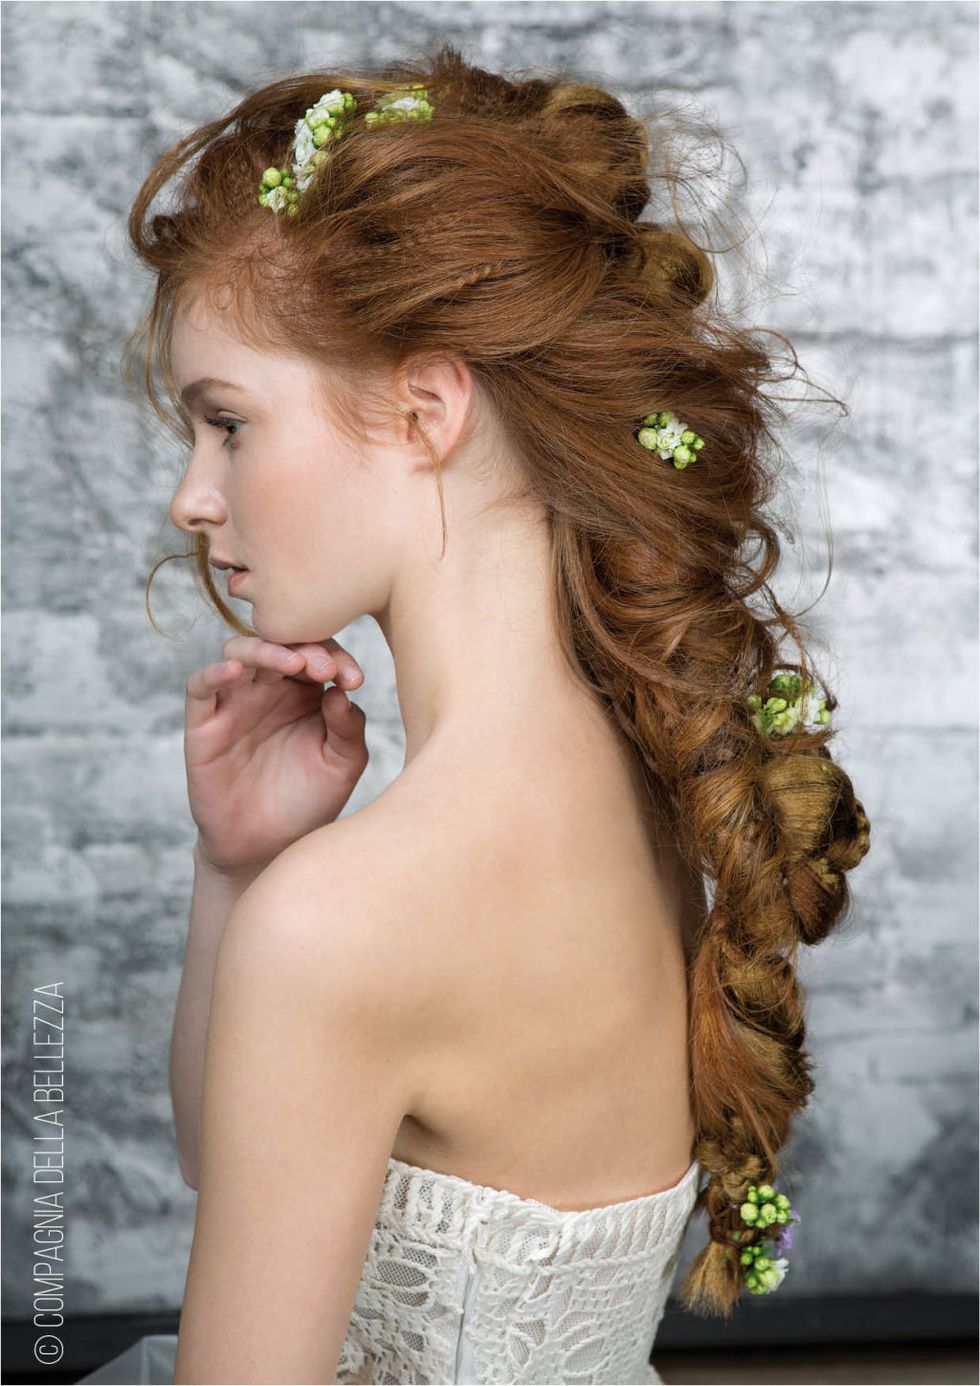 <p>I capelli sono intrecciati ad arte e si appoggiano delicatamente sulla schiena. Tra le ciocche, piccoli fiori aggiungono all'acconciatura un mood ancora più femminile.</p>